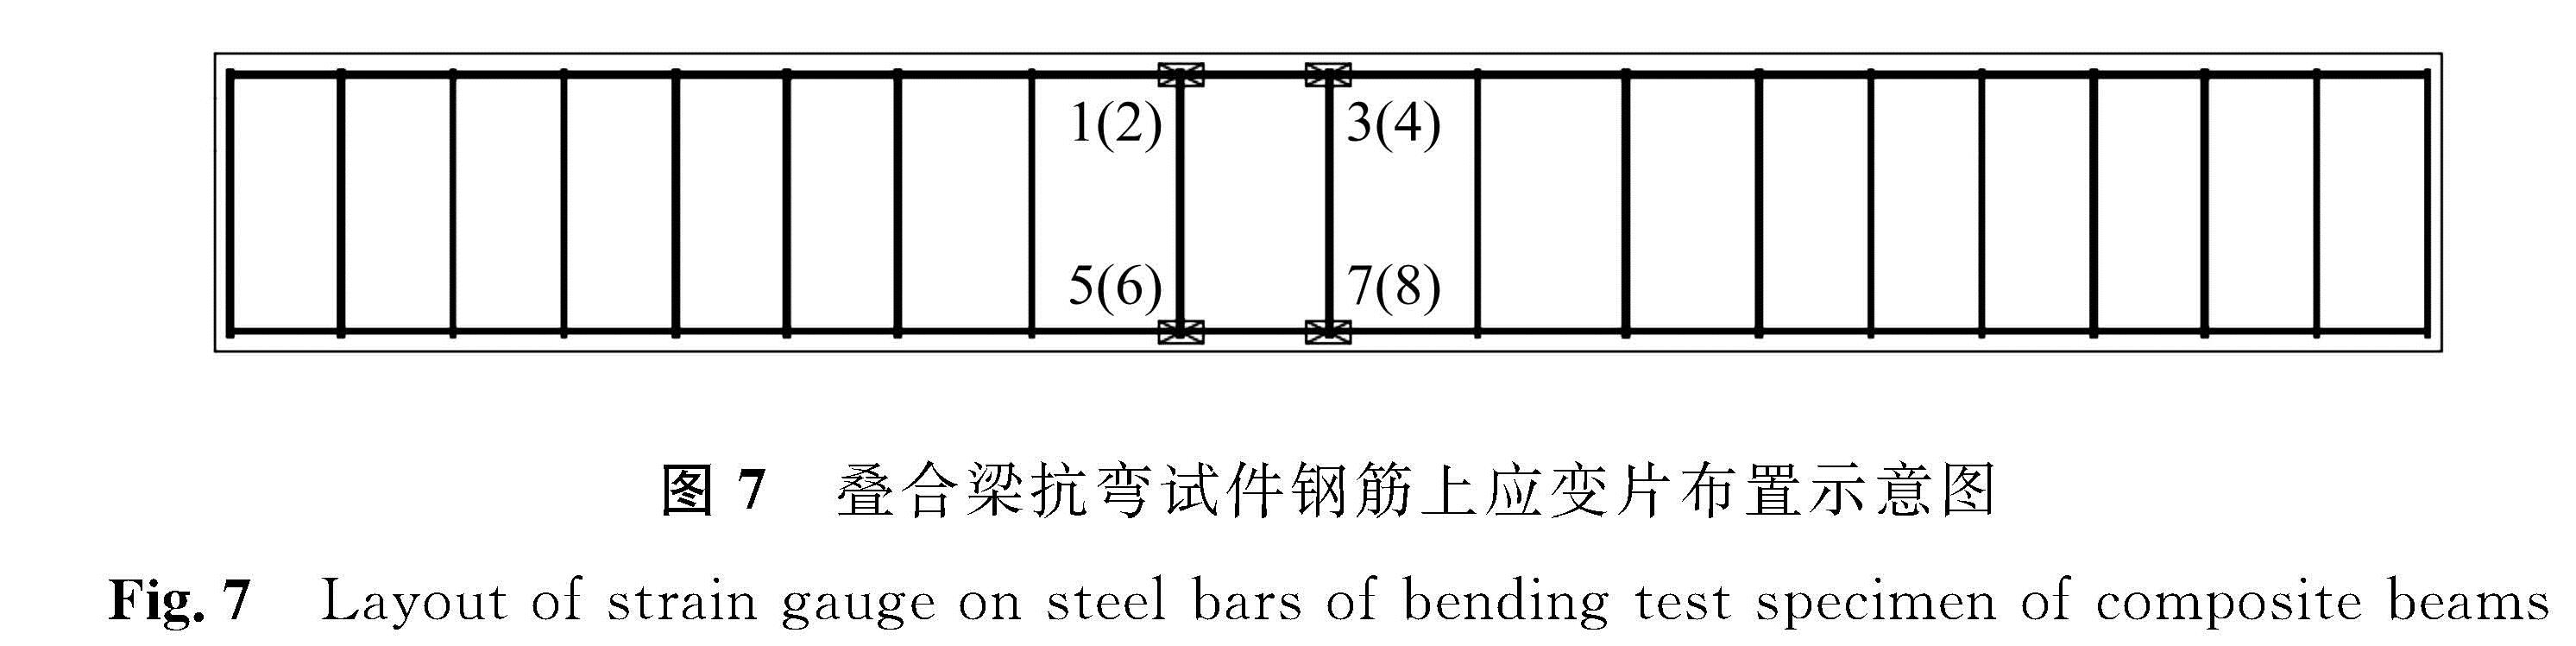 图7 叠合梁抗弯试件钢筋上应变片布置示意图<br/>Fig.7 Layout of strain gauge on steel bars of bending test specimen of composite beams